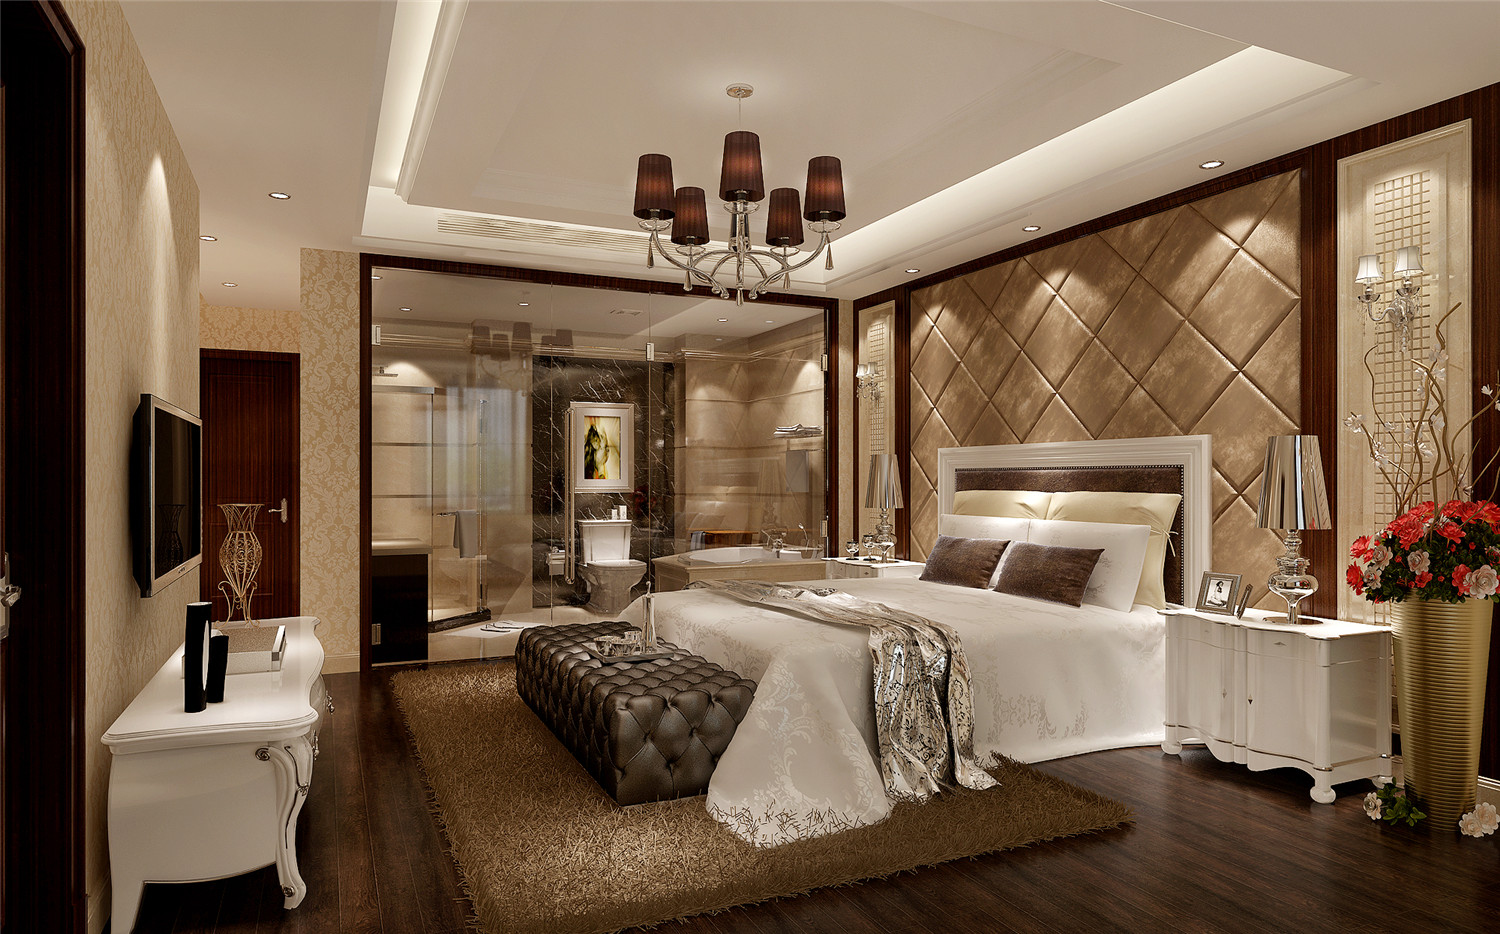 尚海湾 装修设计 现代风格 腾龙设计 林财表作品 卧室图片来自腾龙设计在尚海湾四房装修现代风格设计的分享